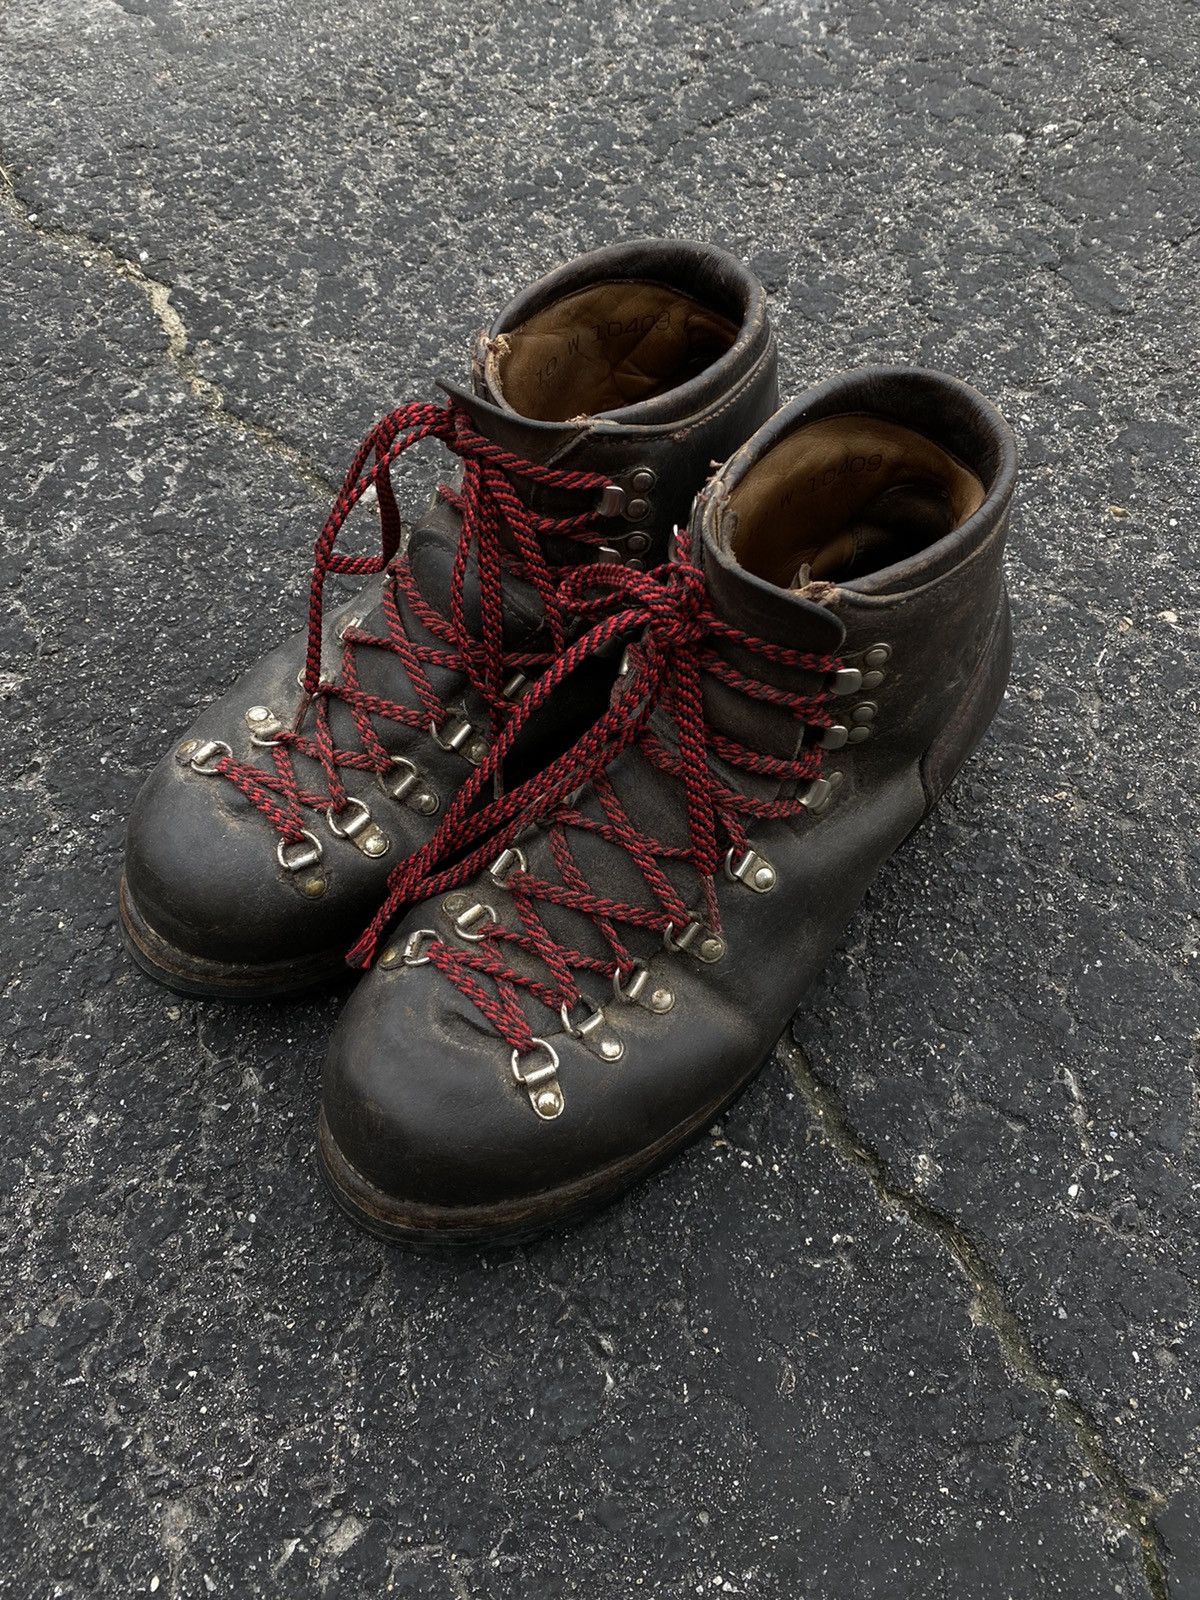 Vintage Vintage Vibram Hiking Boots | Grailed